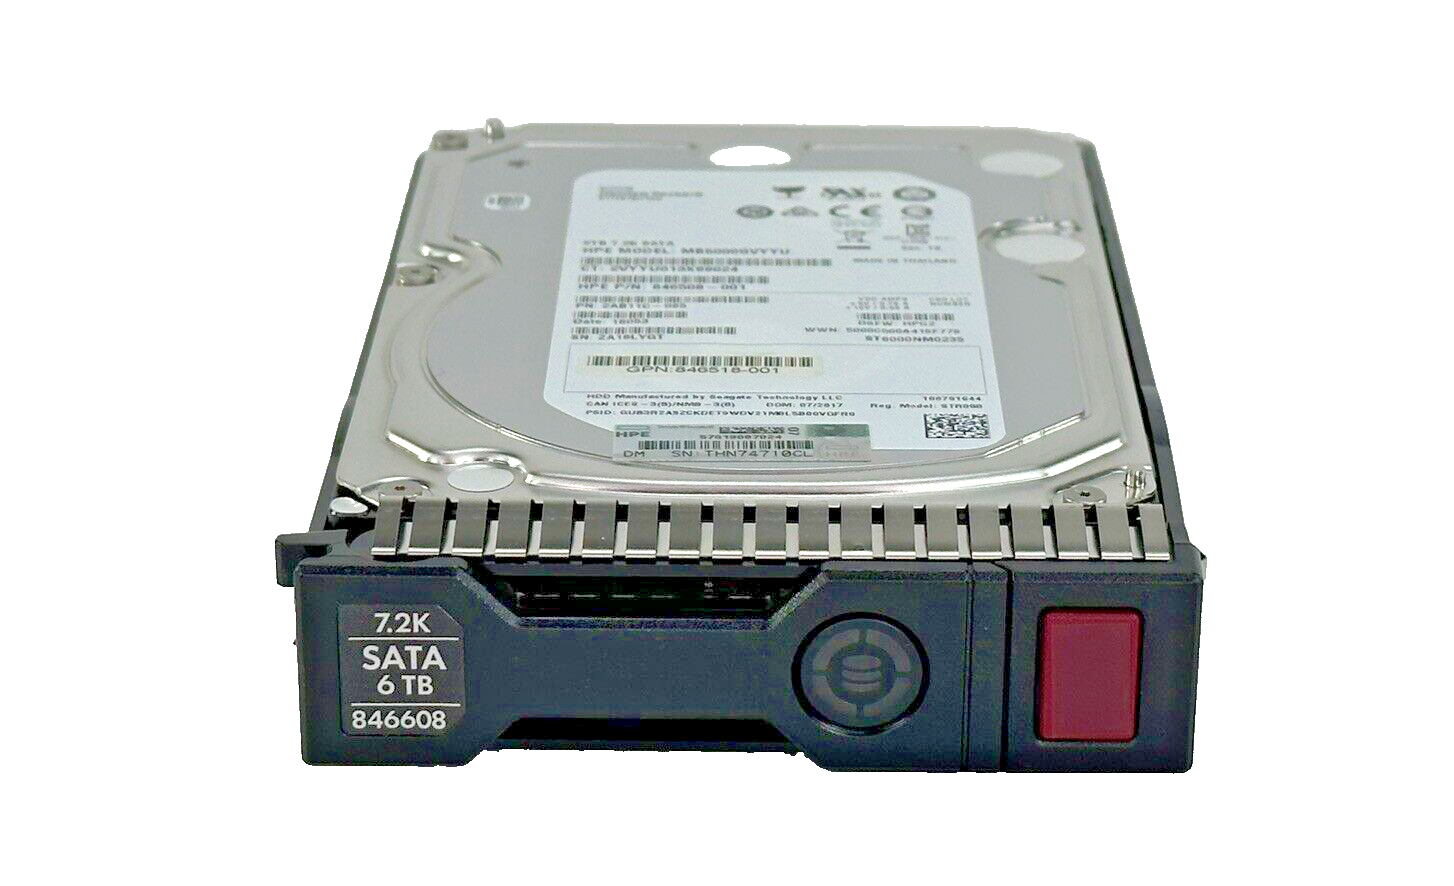 HPE 6TB SATA LFF HDD 7.2K 6G SC 3.5 Hard Drive 846608-001 Gen8, Gen9, Gen10